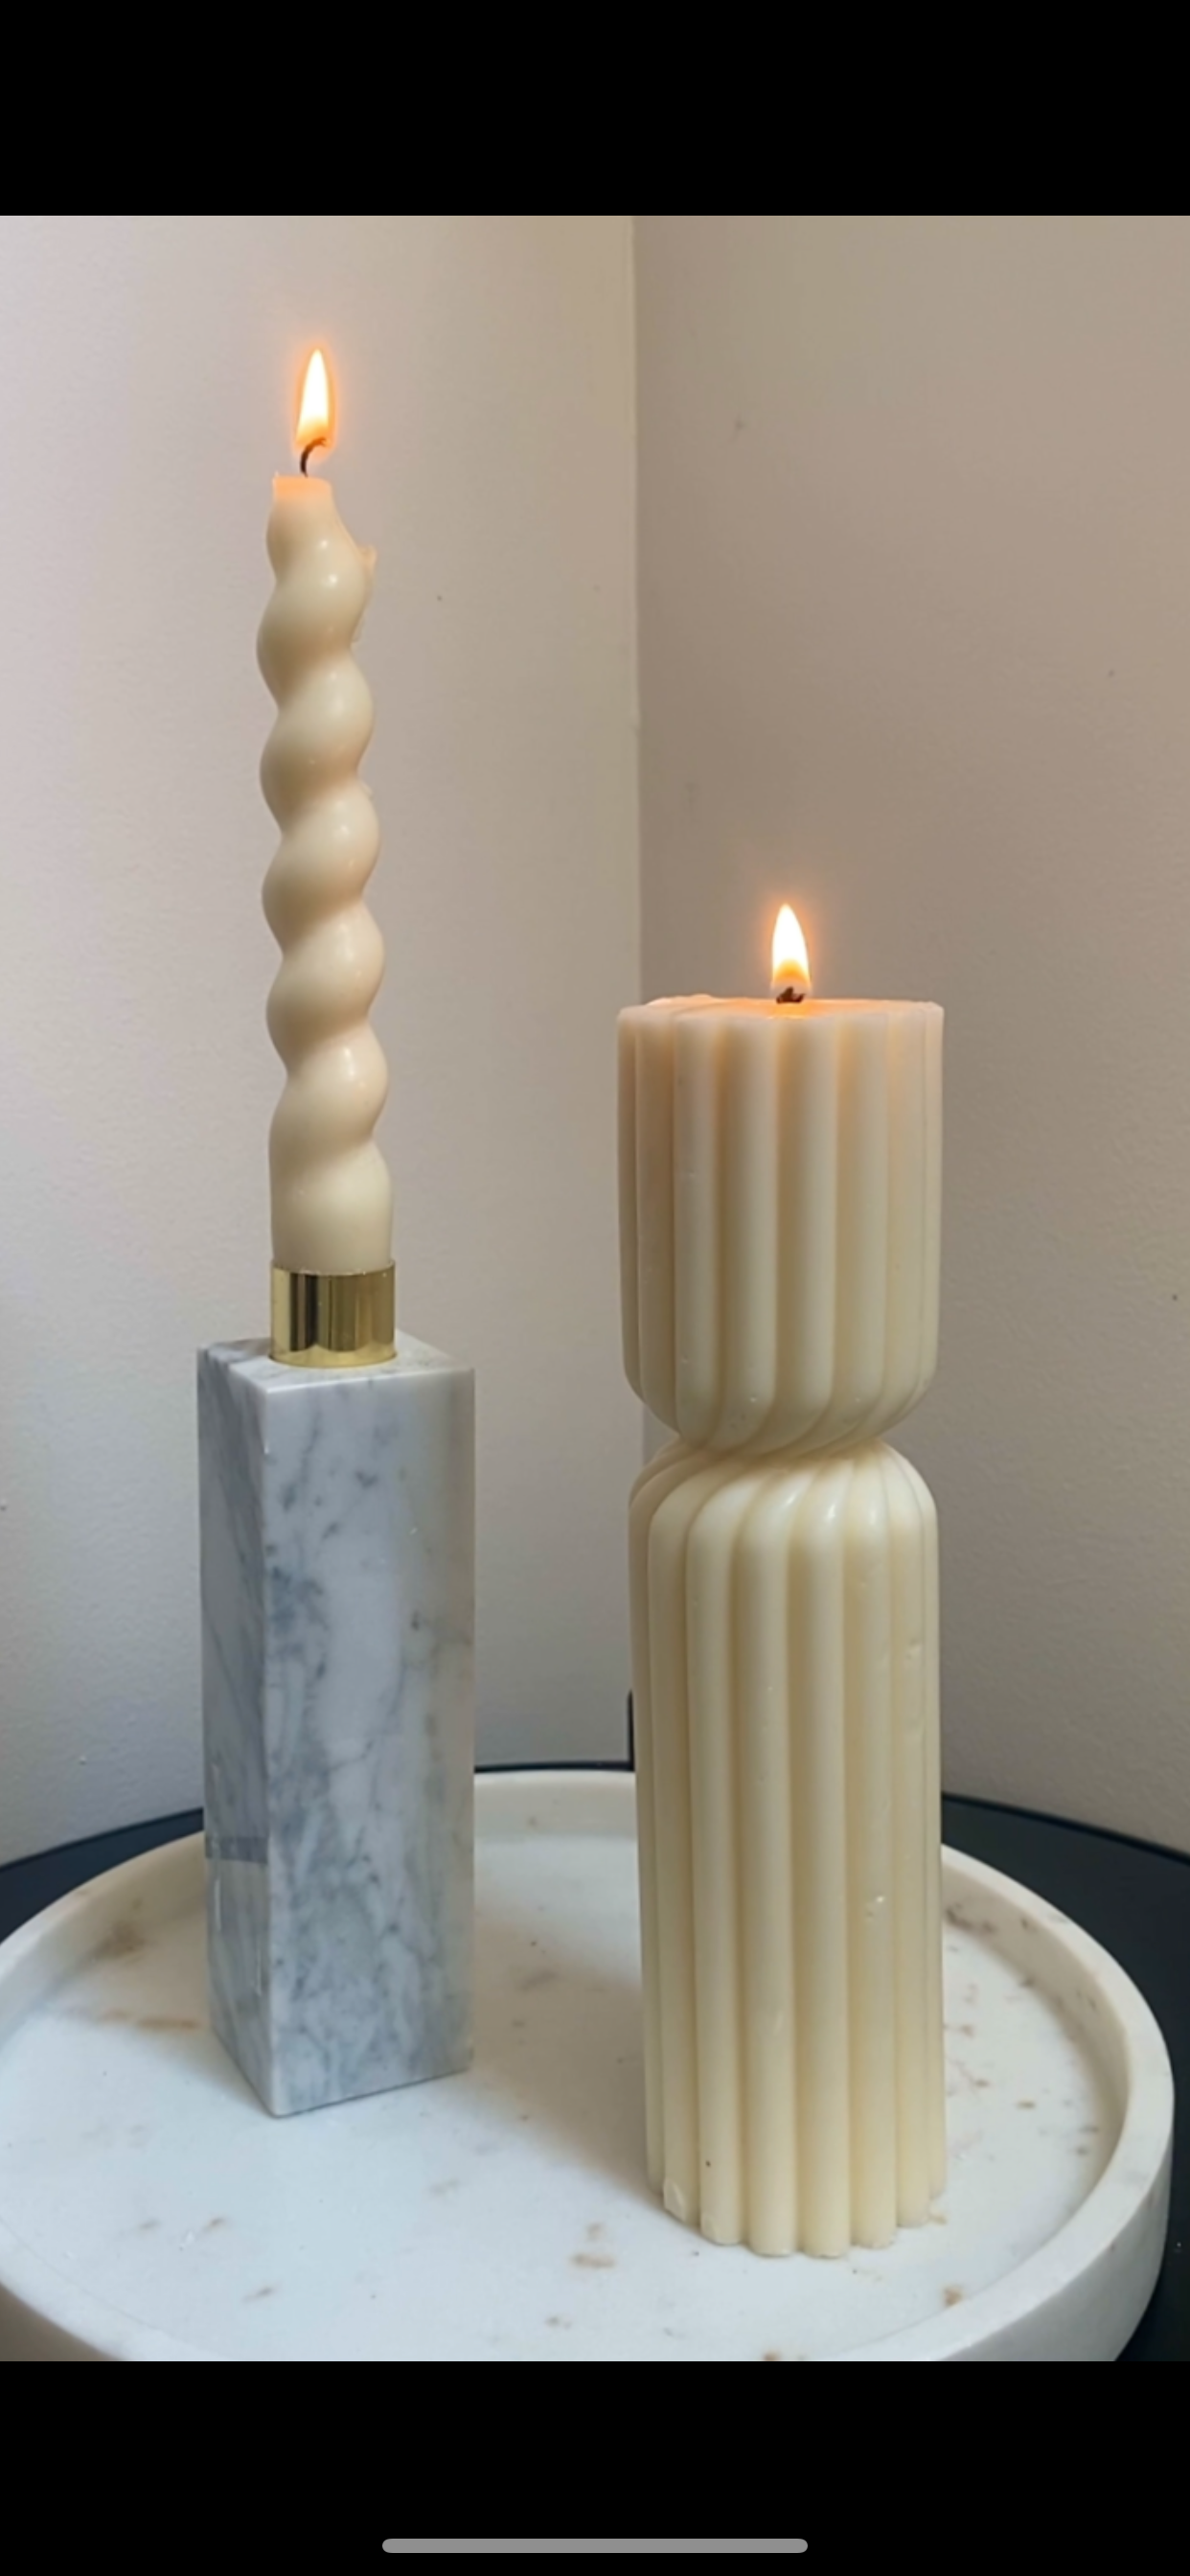 Les bougies sculpturales – Mirabelle